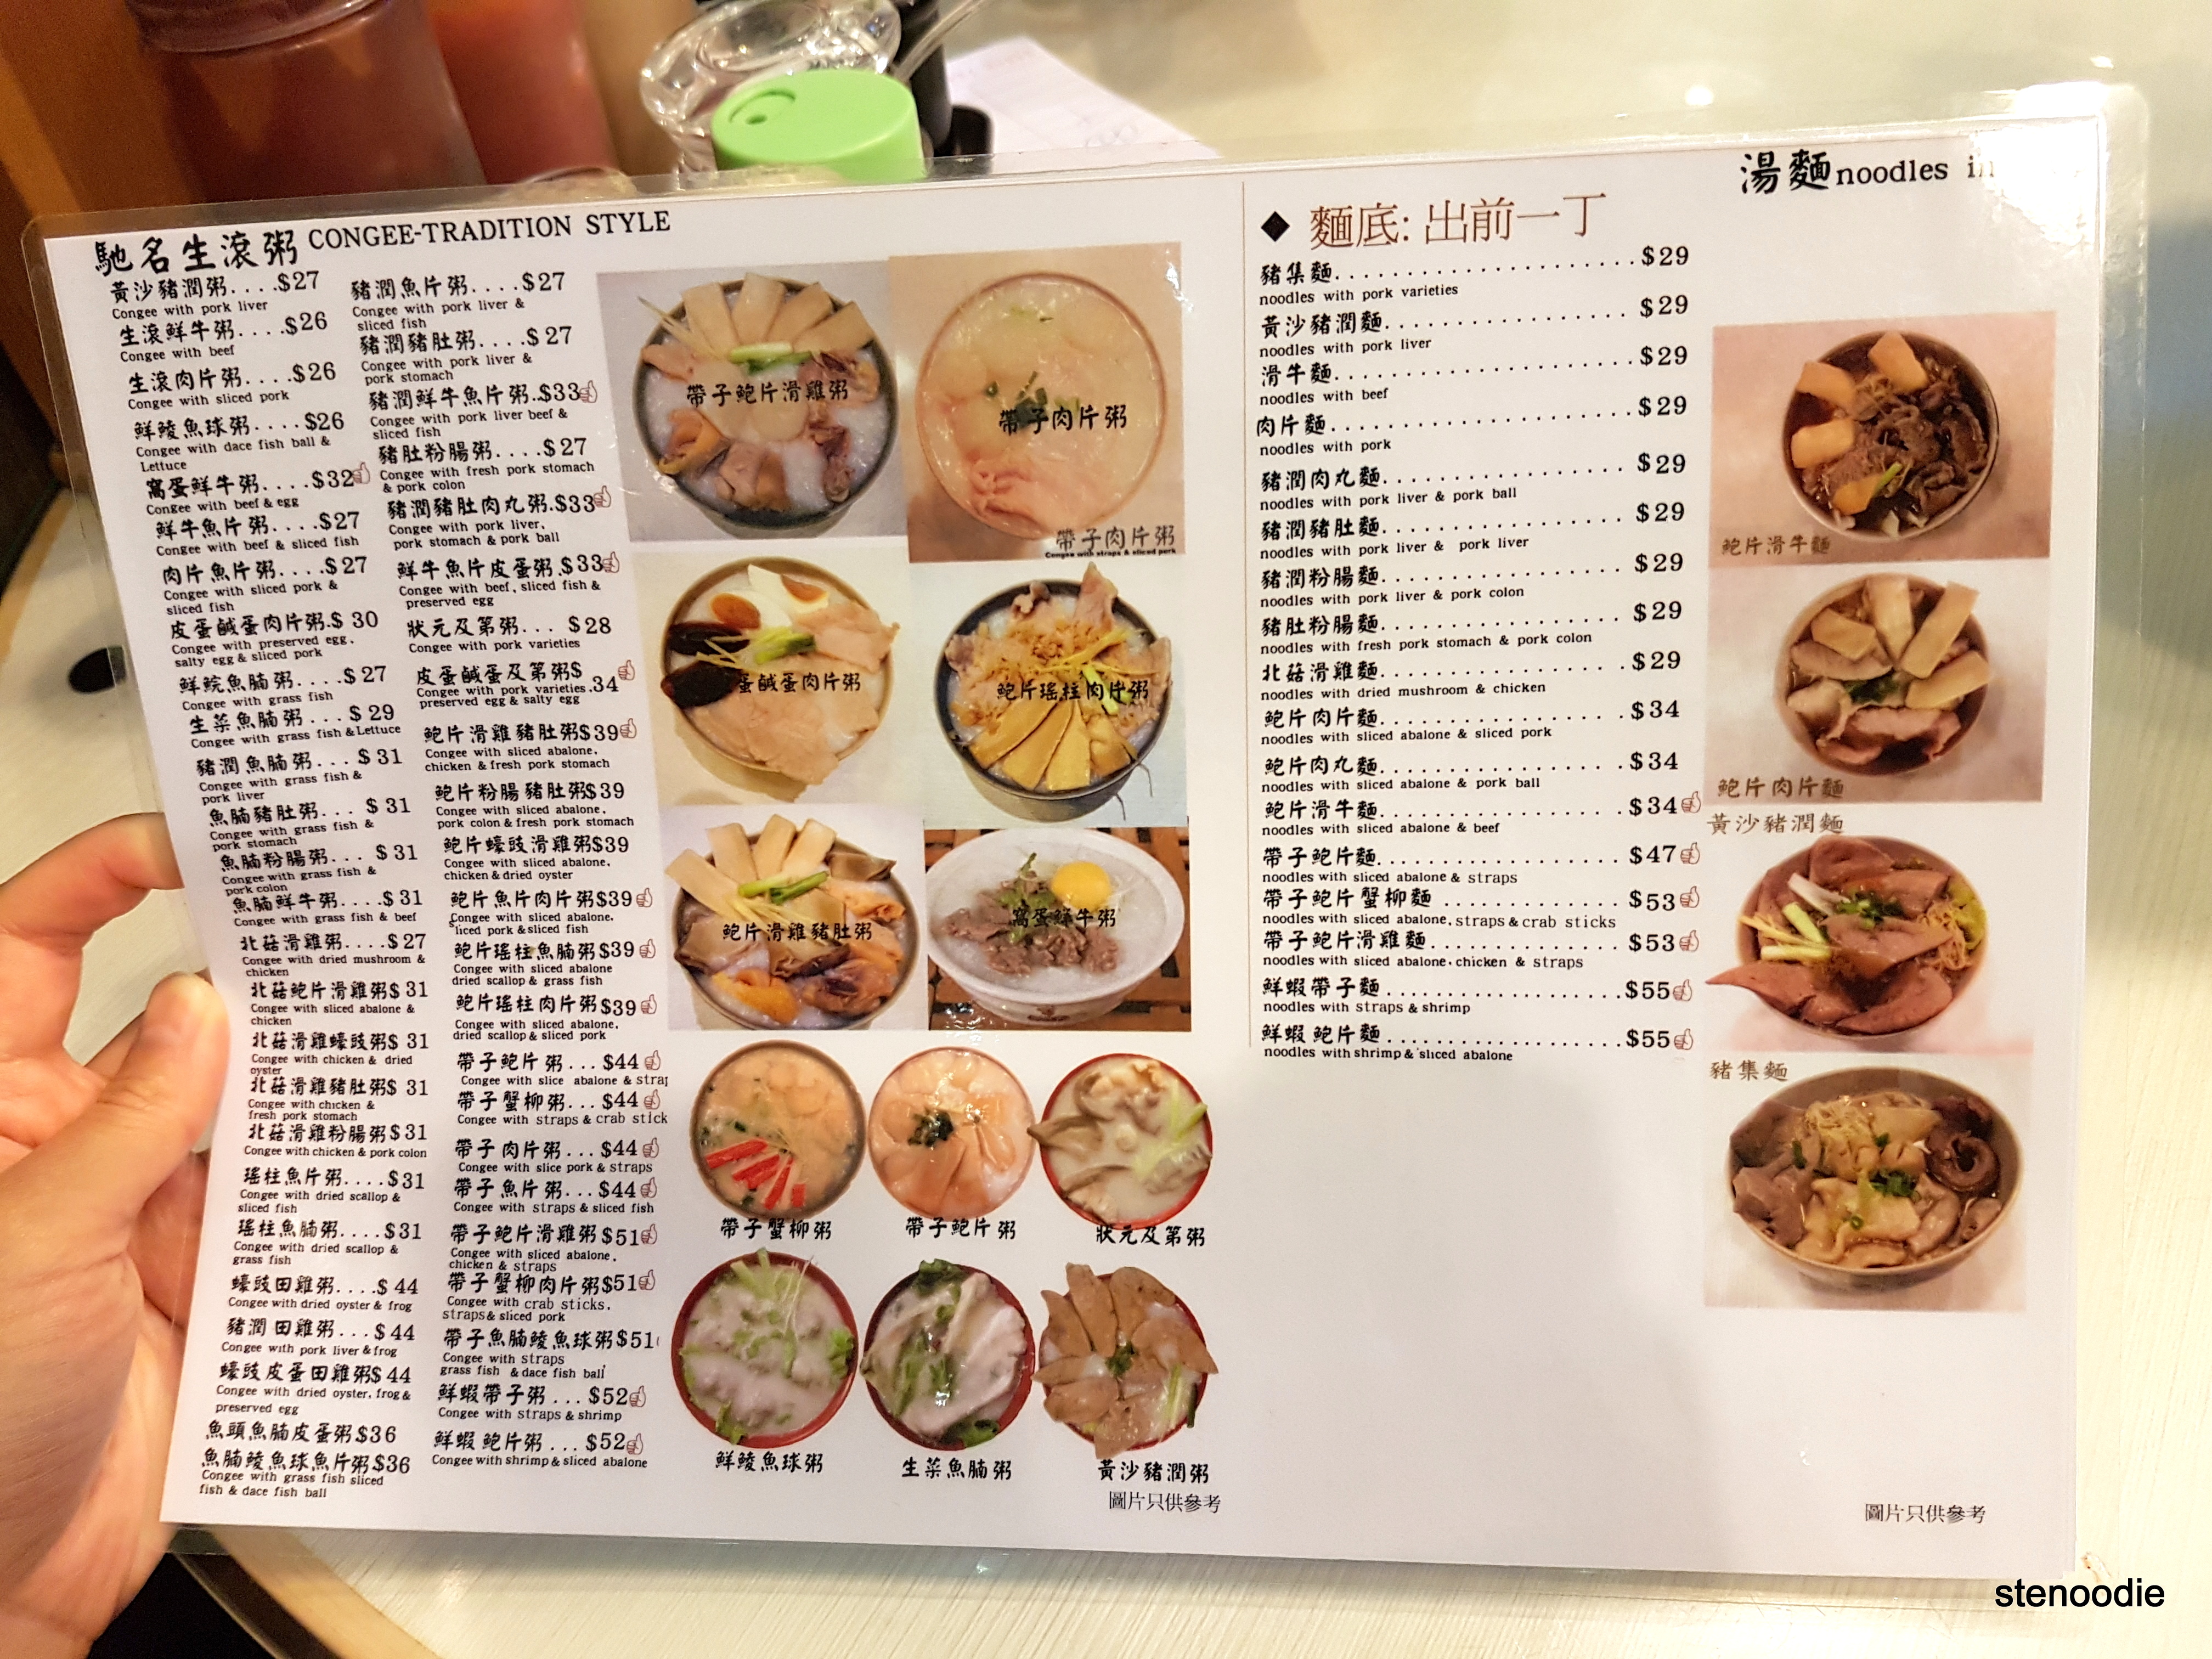 大師傅粥品 menu and prices